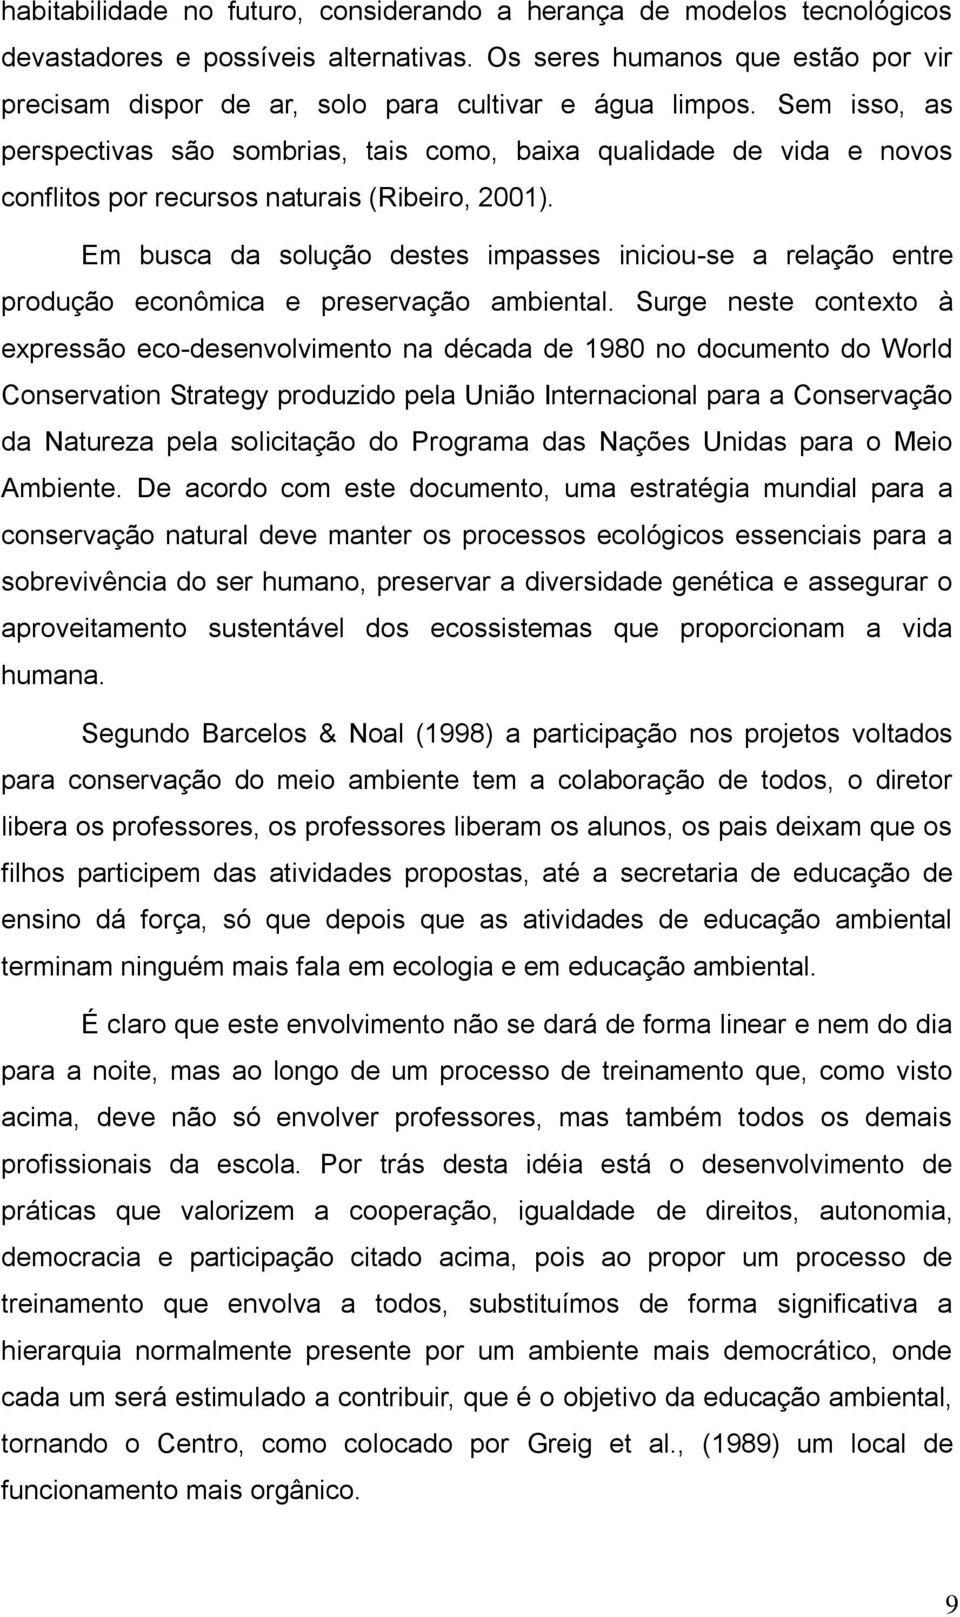 Sem isso, as perspectivas são sombrias, tais como, baixa qualidade de vida e novos conflitos por recursos naturais (Ribeiro, 2001).